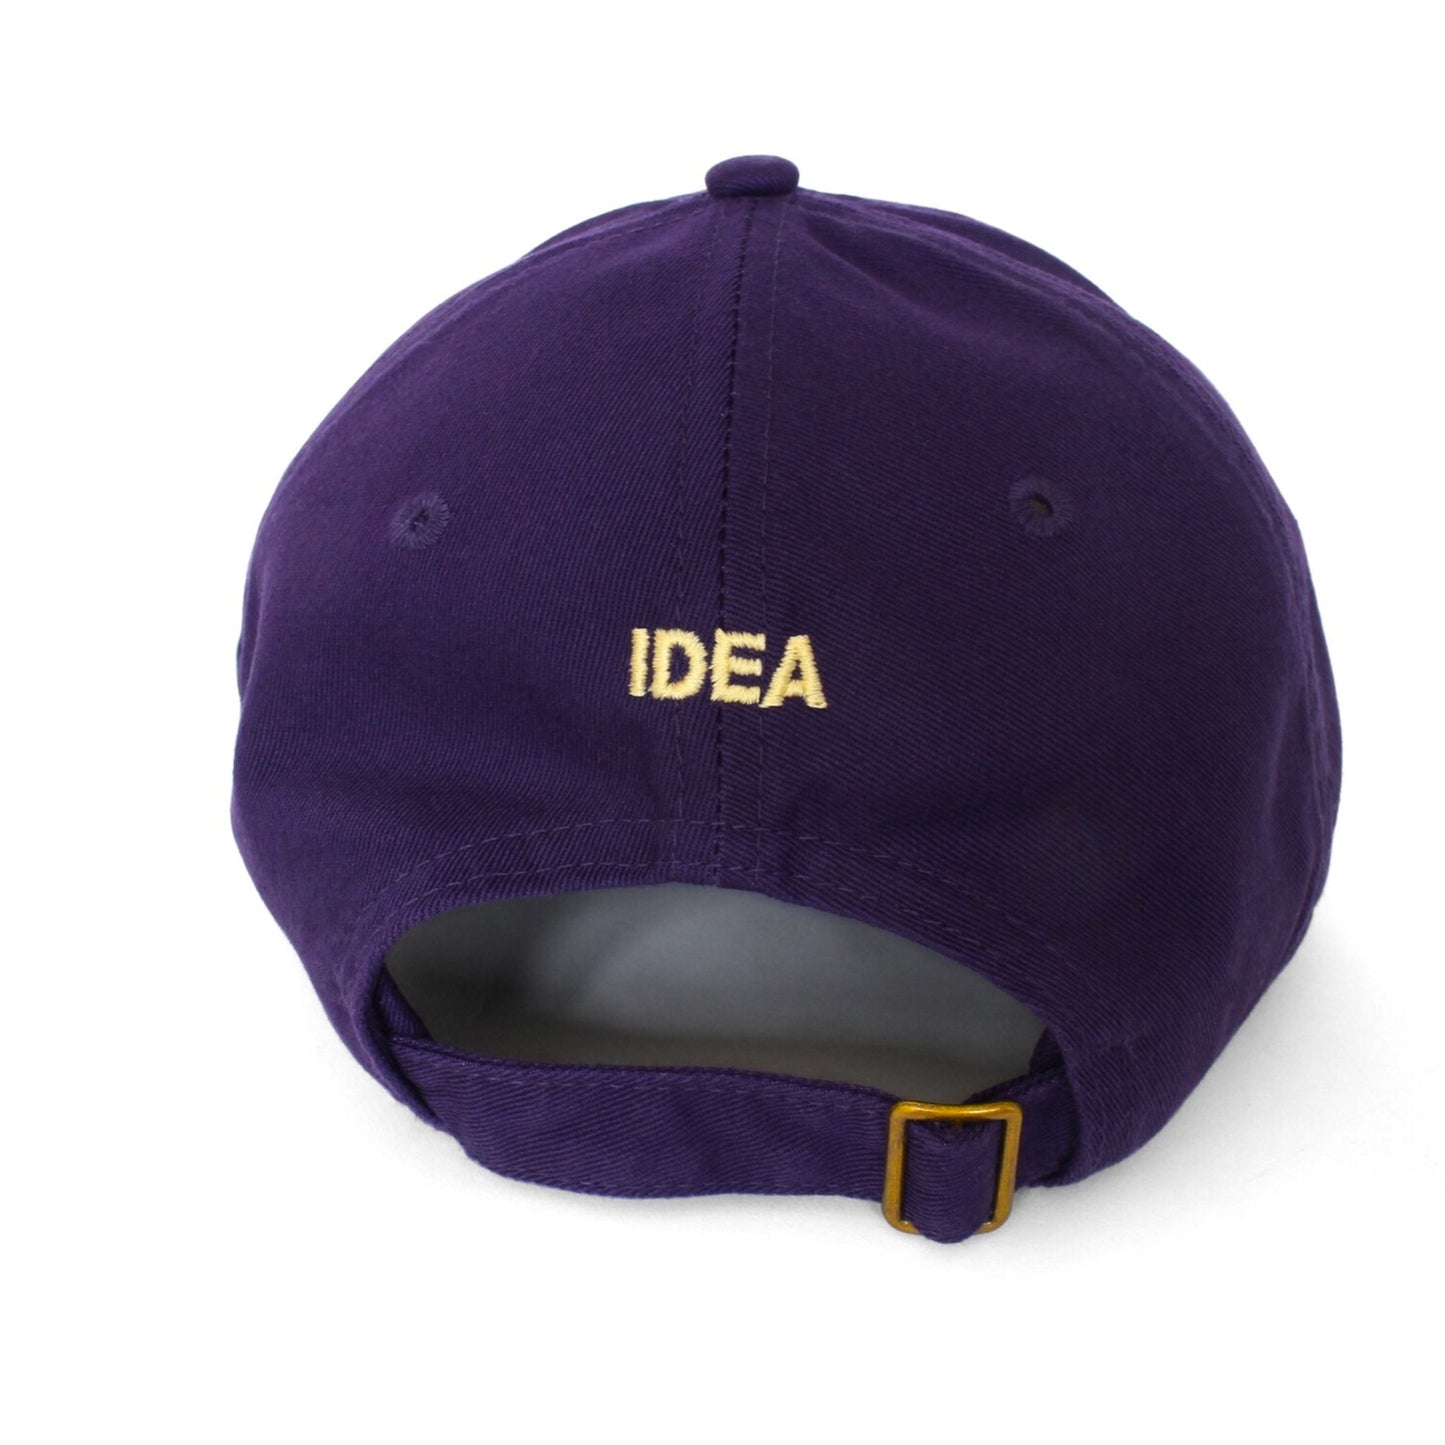 IDEA - Tiger In Bad Hat